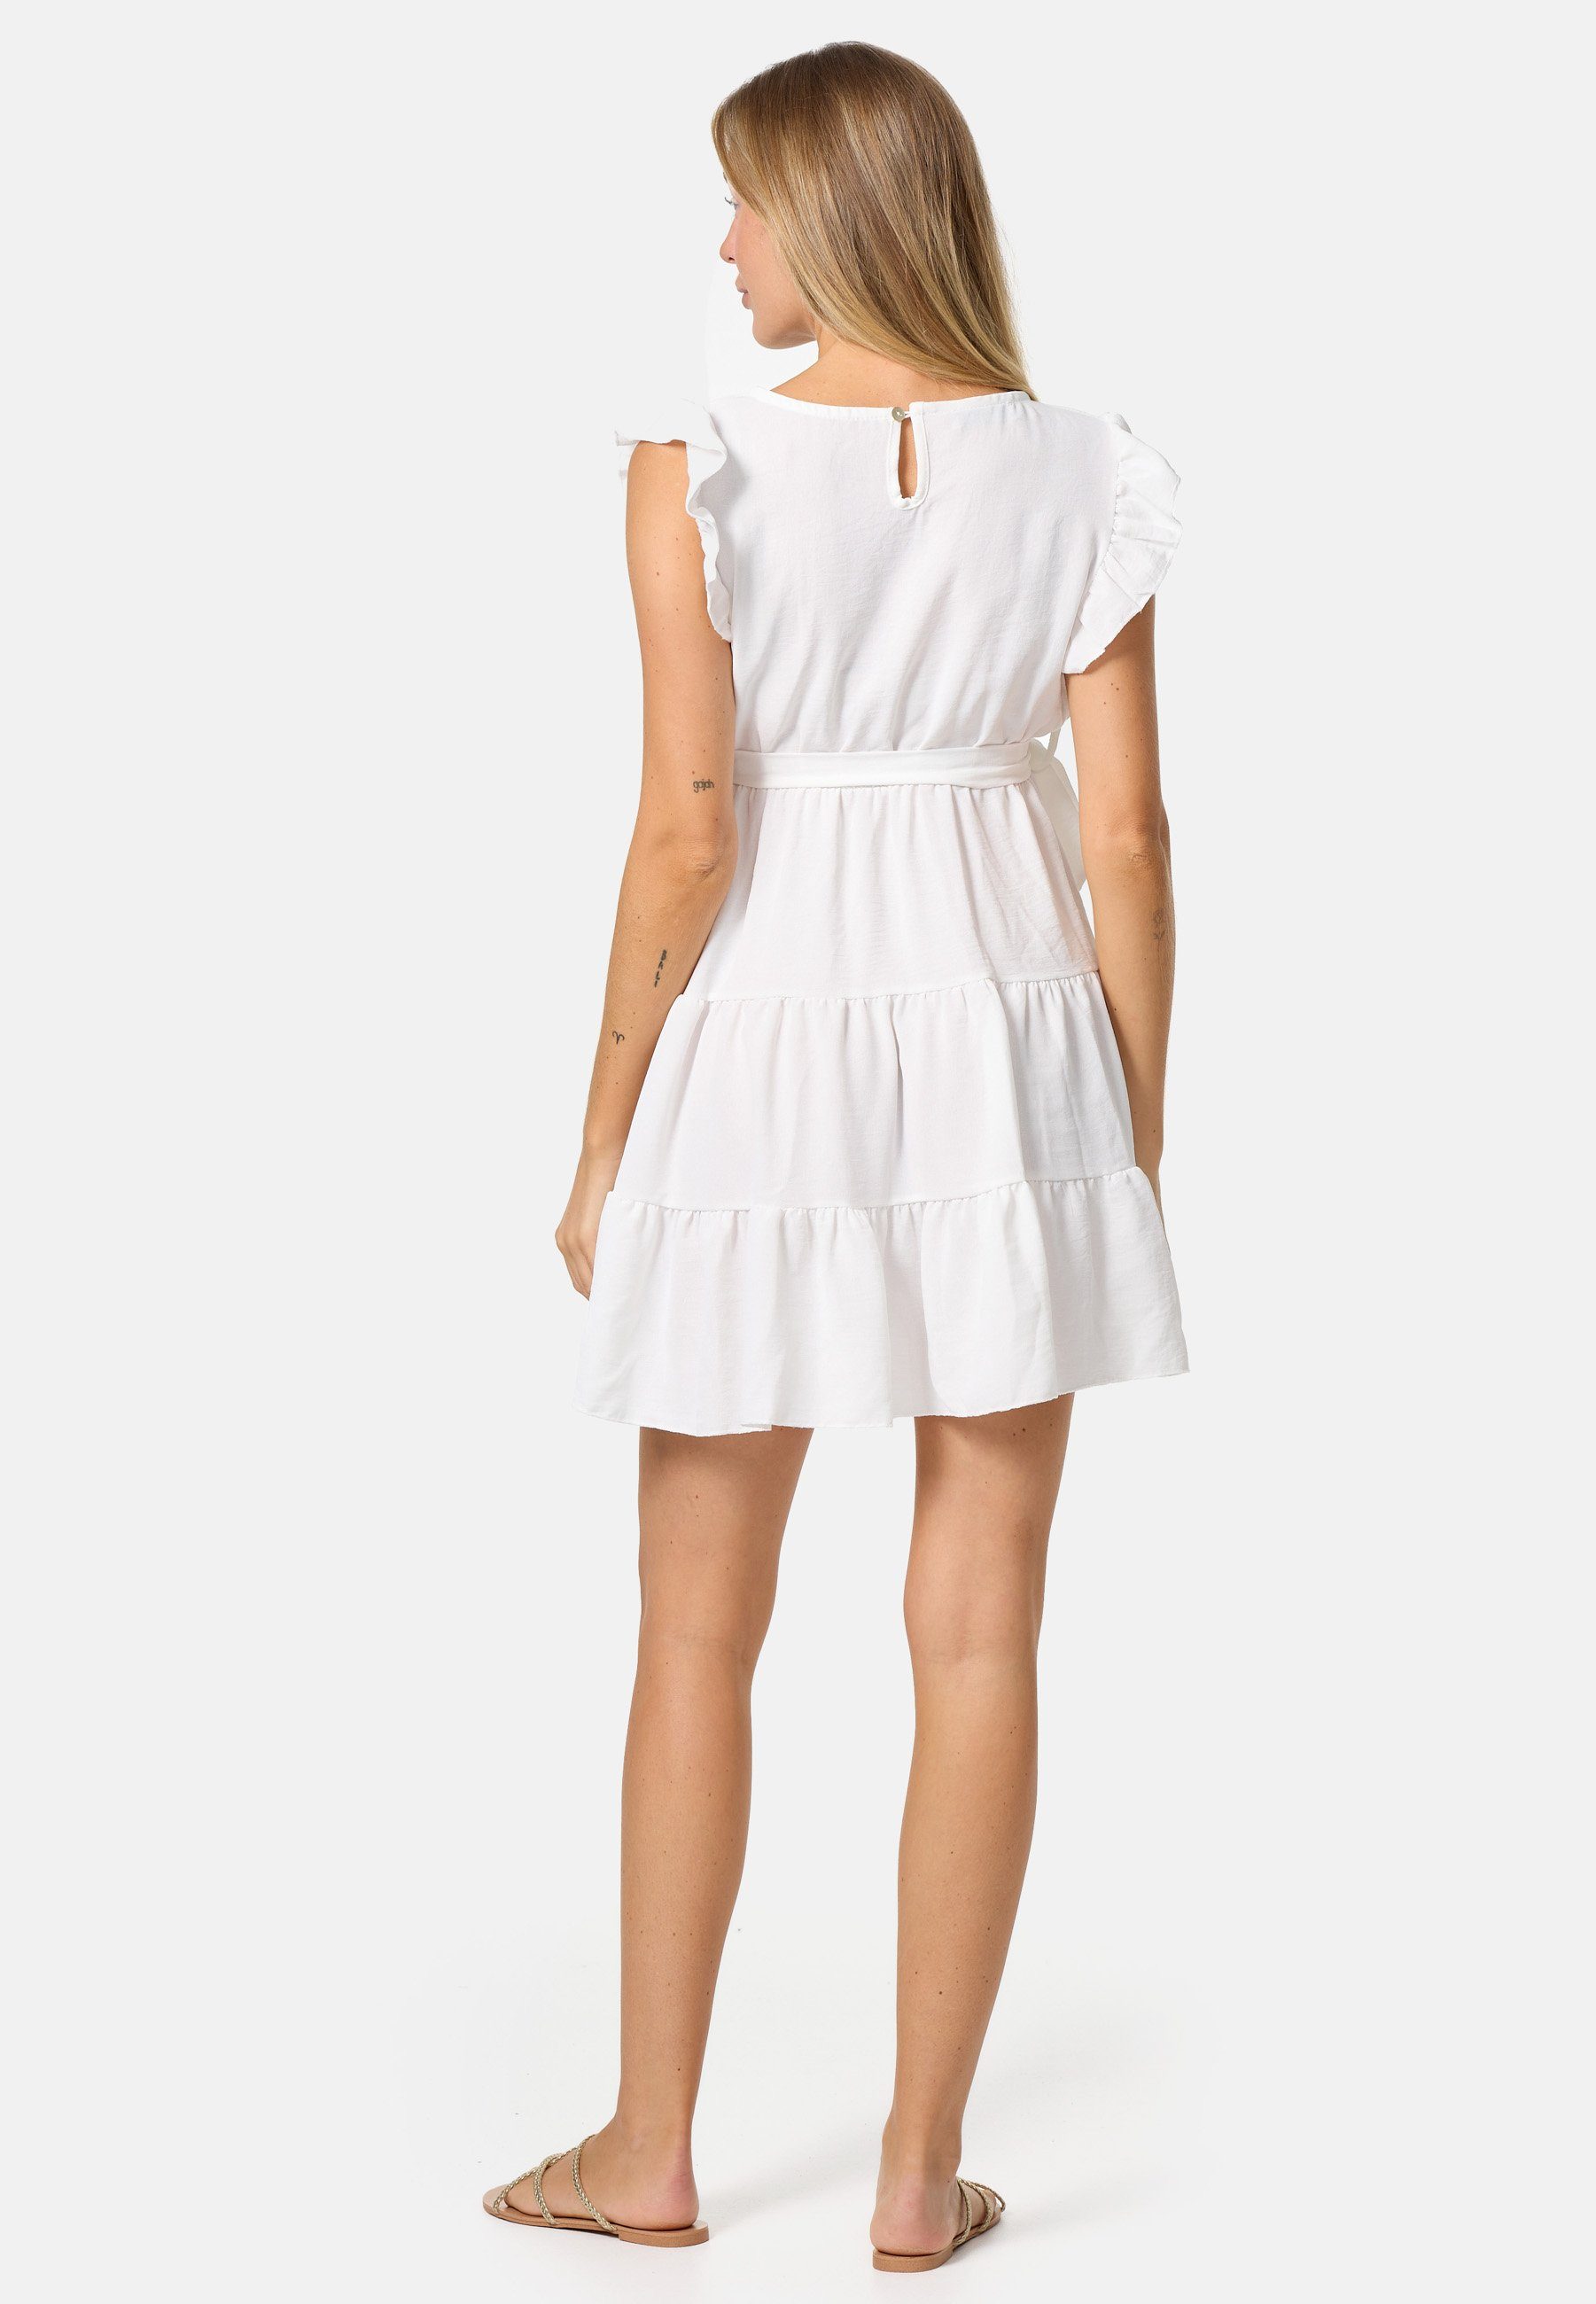 PM SELECTED Minikleid PM-27 Weiß (Sommerkleid in Rüschen Kleid Einheitsgröße) mit Midi